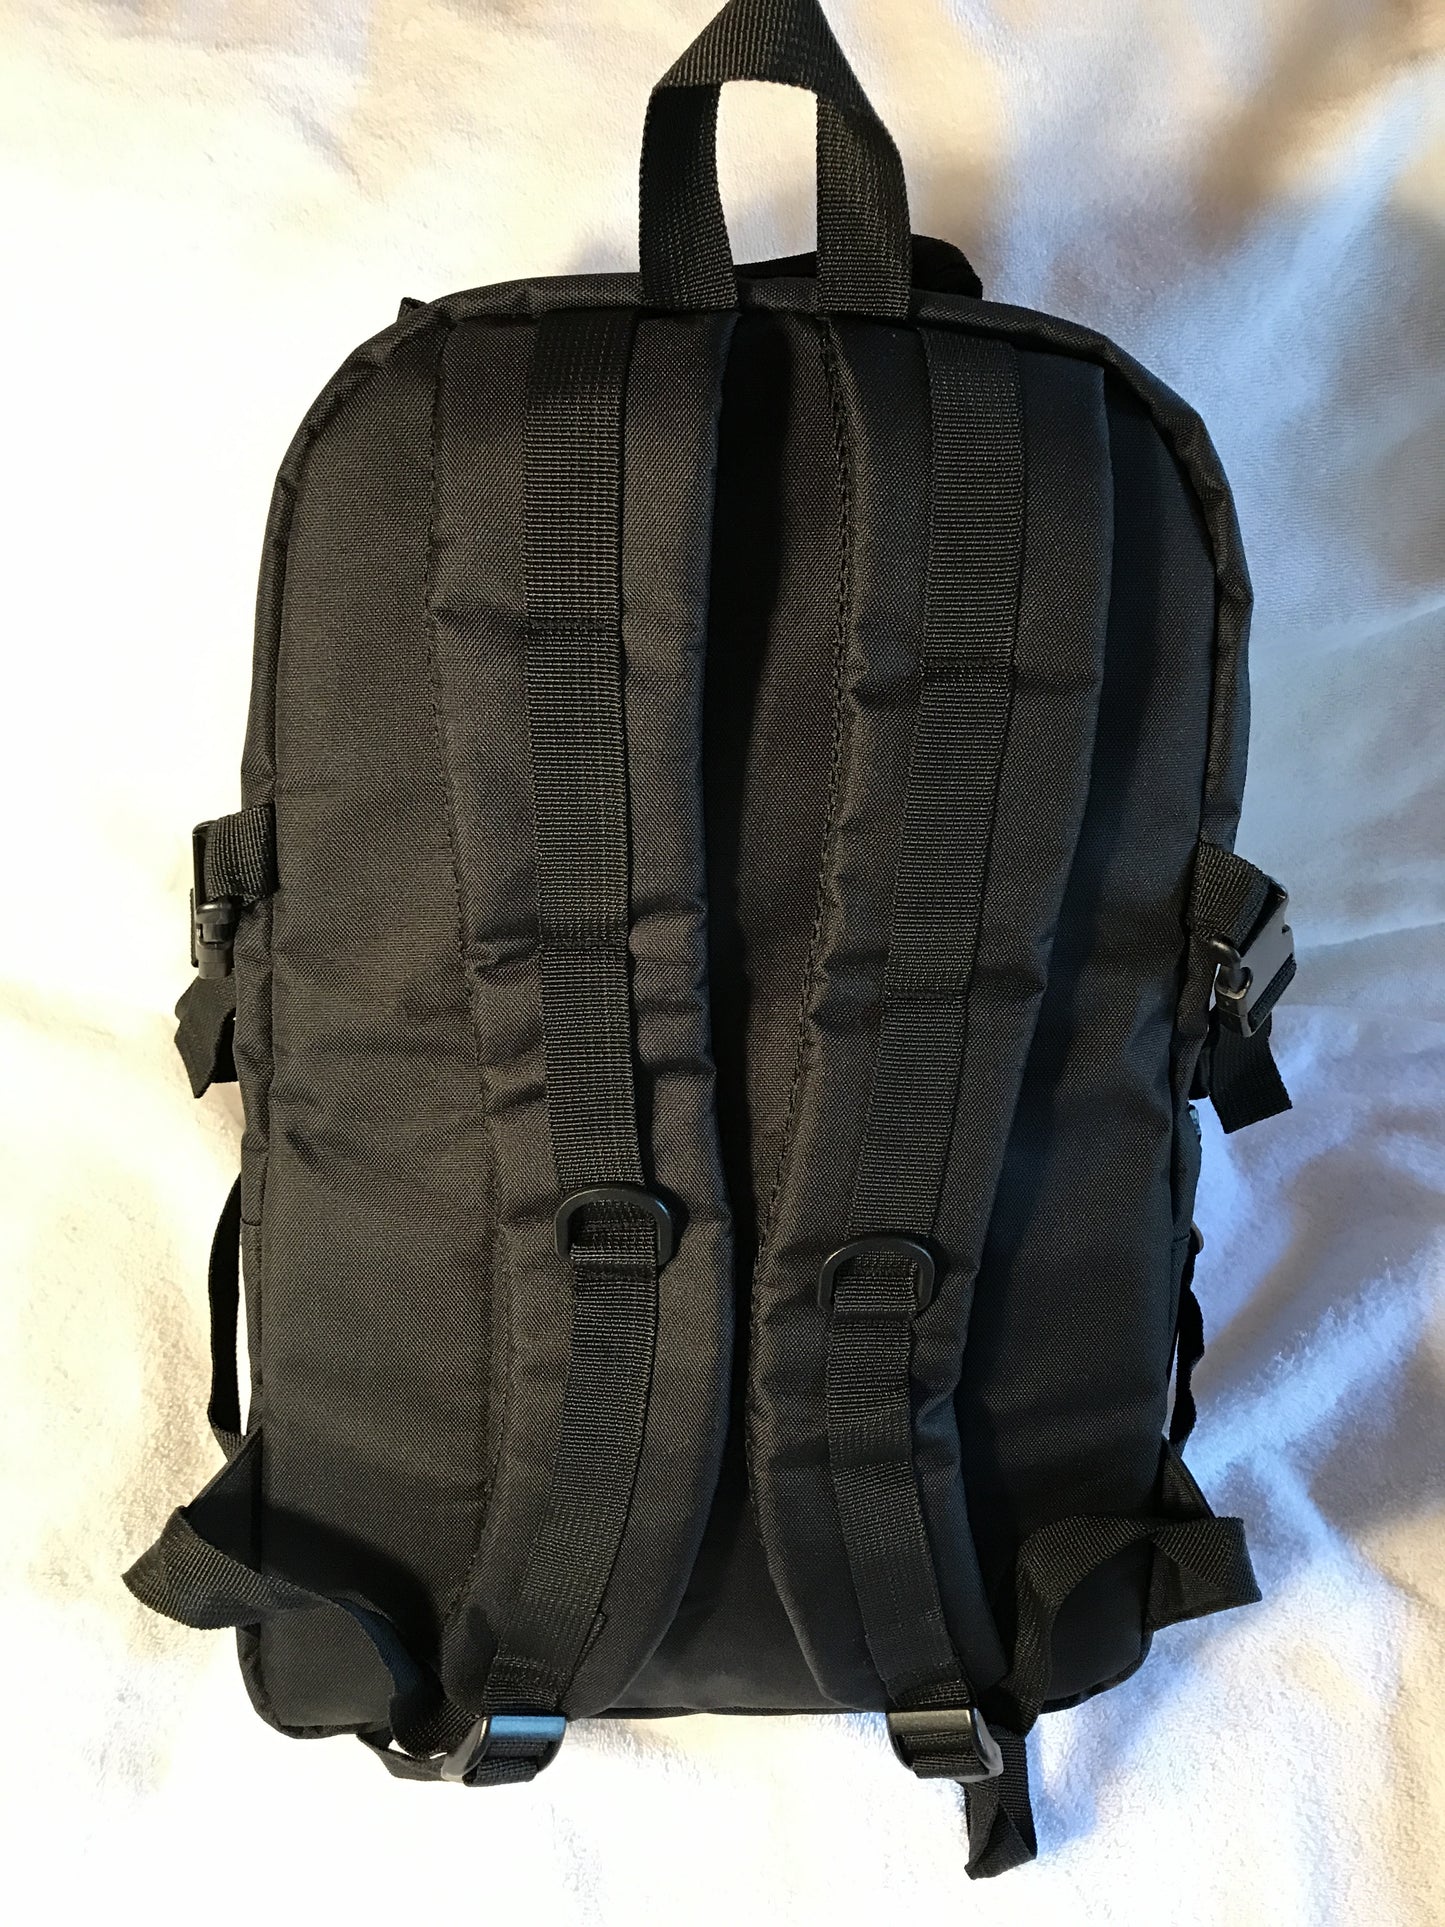 Rocketsports-1 Pro Backpack